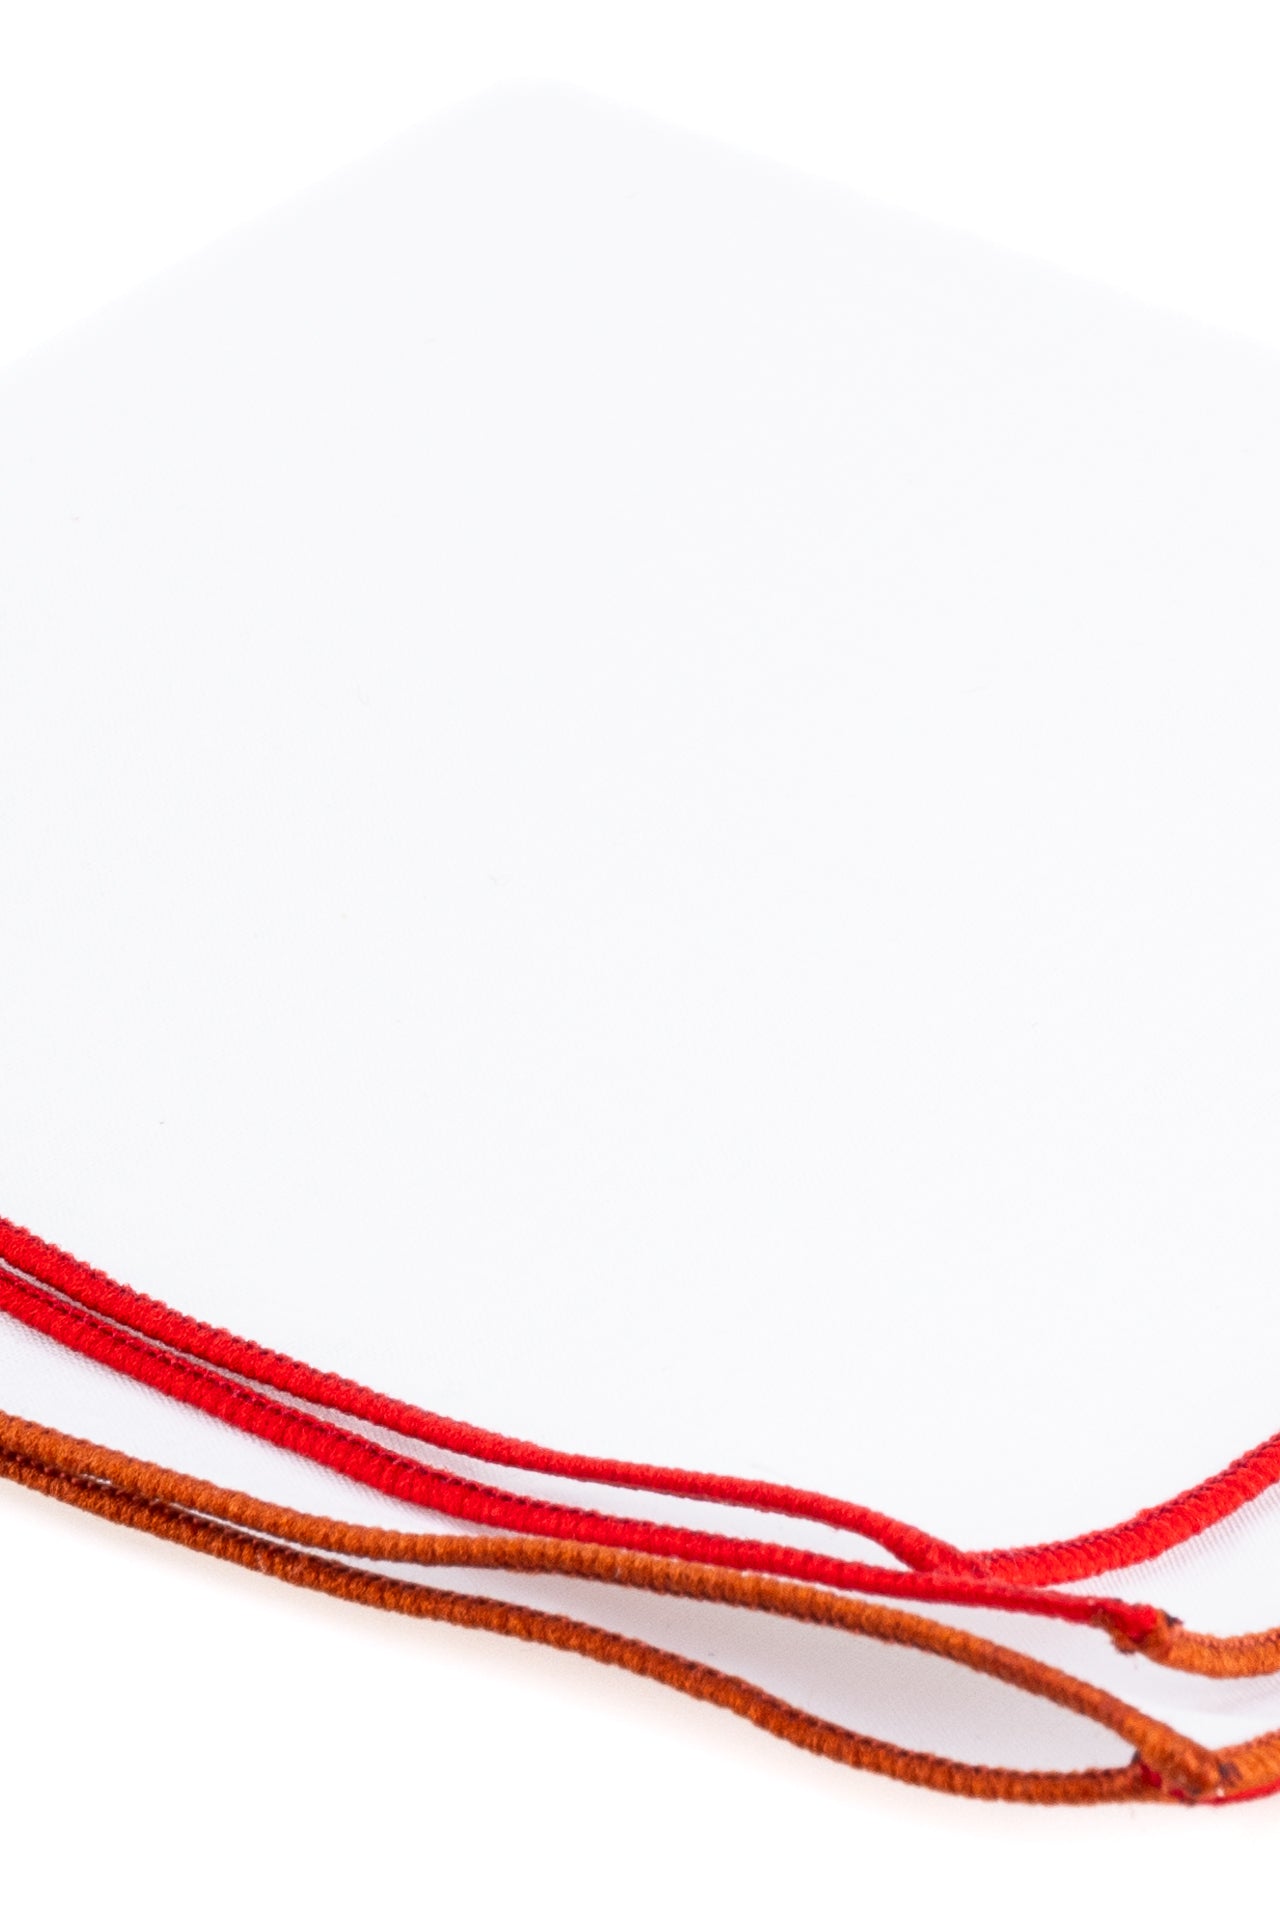 ΑΝΔΡΙΚΟ ΜΑΝΤΗΛΙ ΠΟΣΕΤ PORTOBELLO'S ΛΕΥΚΟ με κόκκινη & πορτοκαλί μπορντούρα